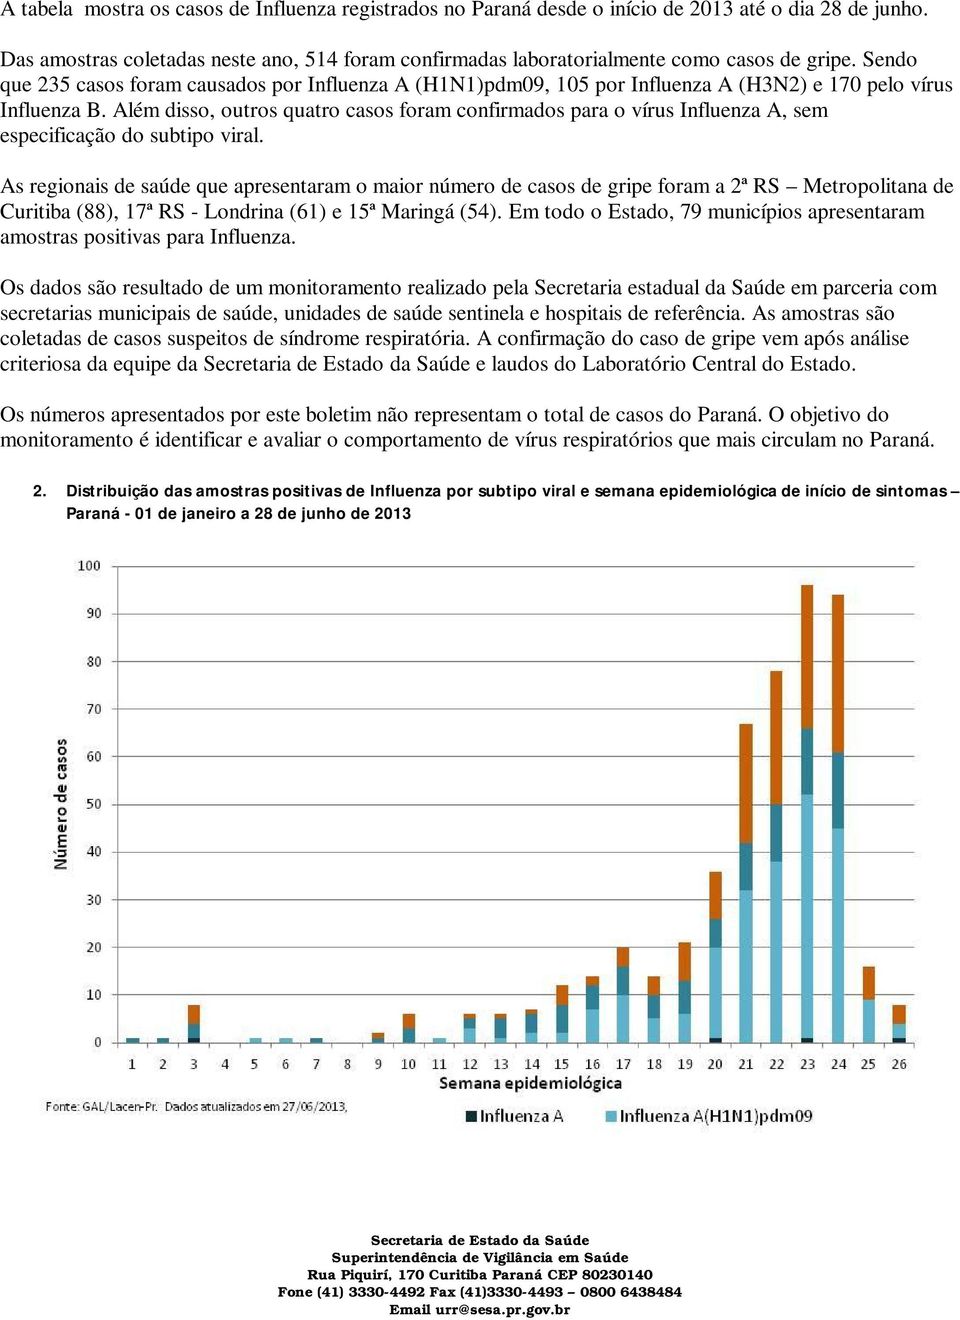 As regionais de saúde que apresentaram o maior número de casos de gripe foram a 2ª RS Metropolitana de Curitiba (88), 17ª RS - Londrina (61) e 15ª Maringá (54).